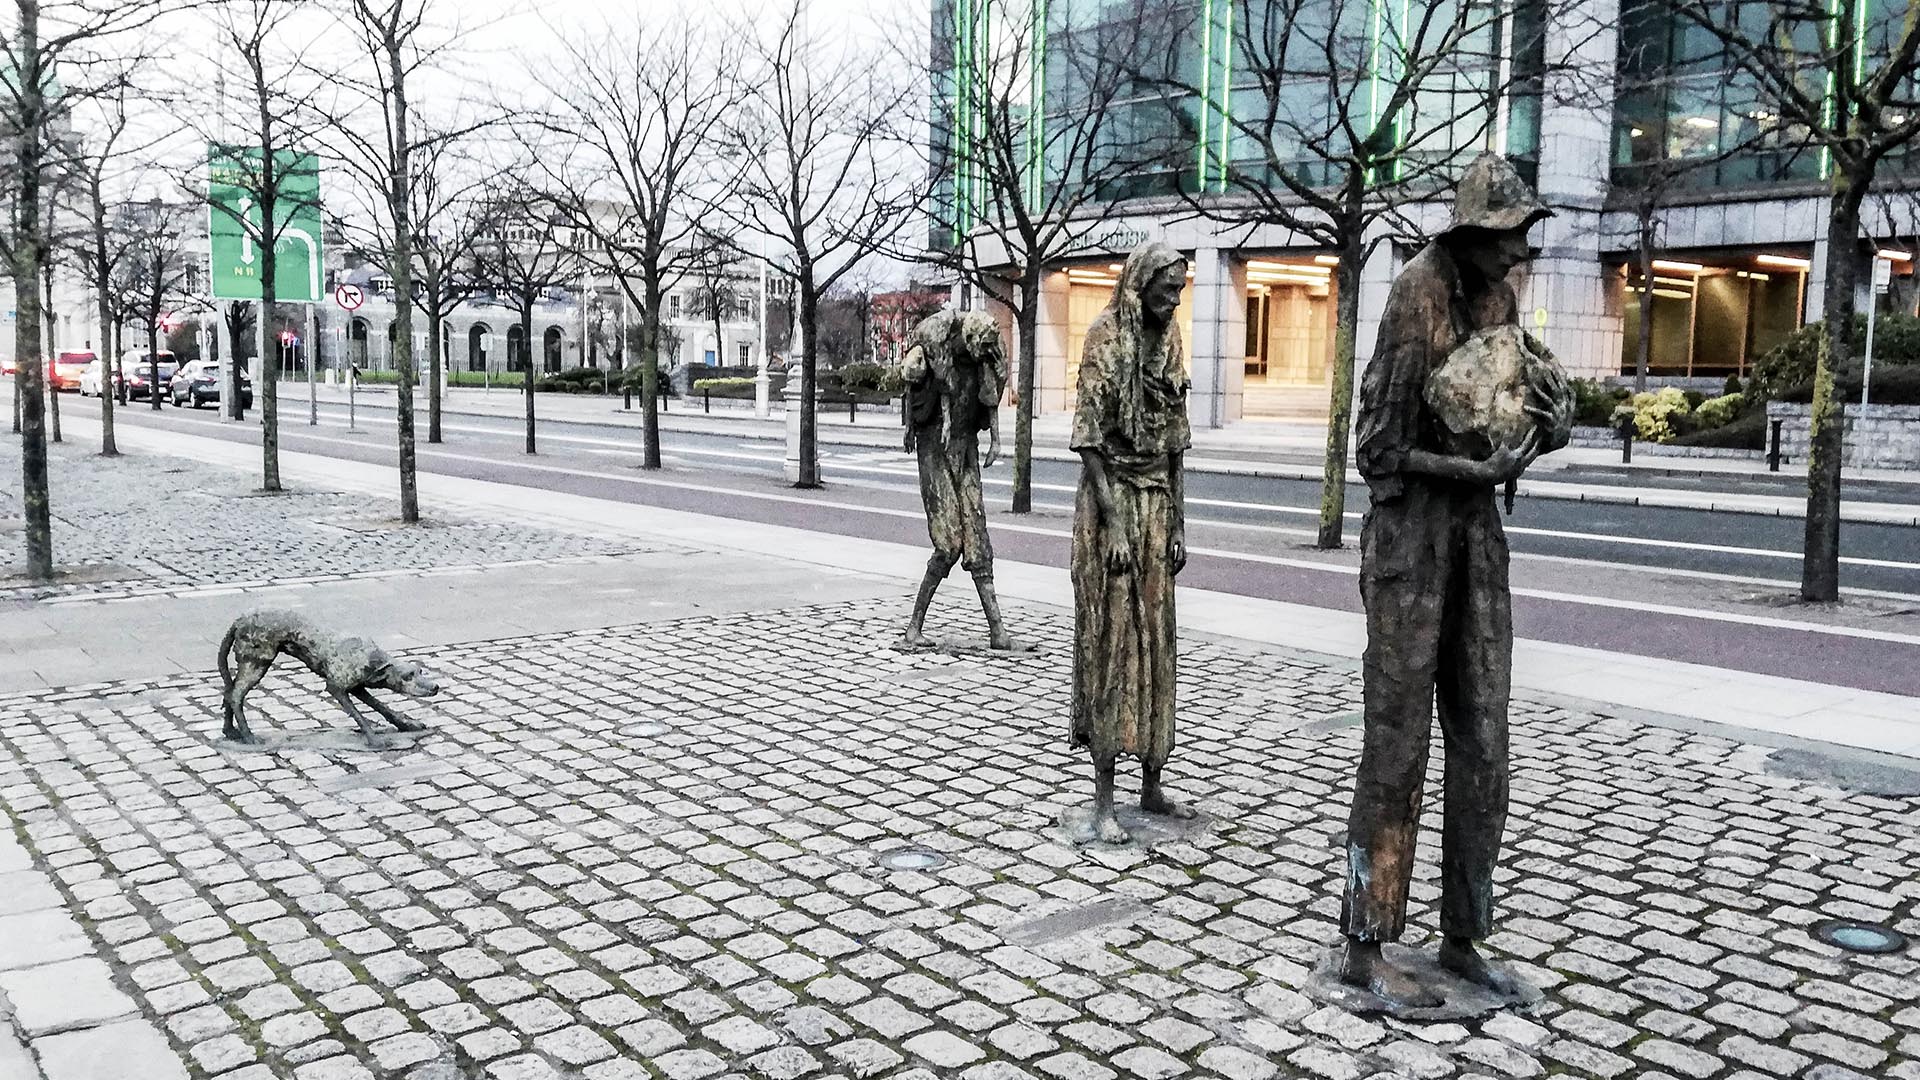 Famine Memorial, Dublín, Irlanda